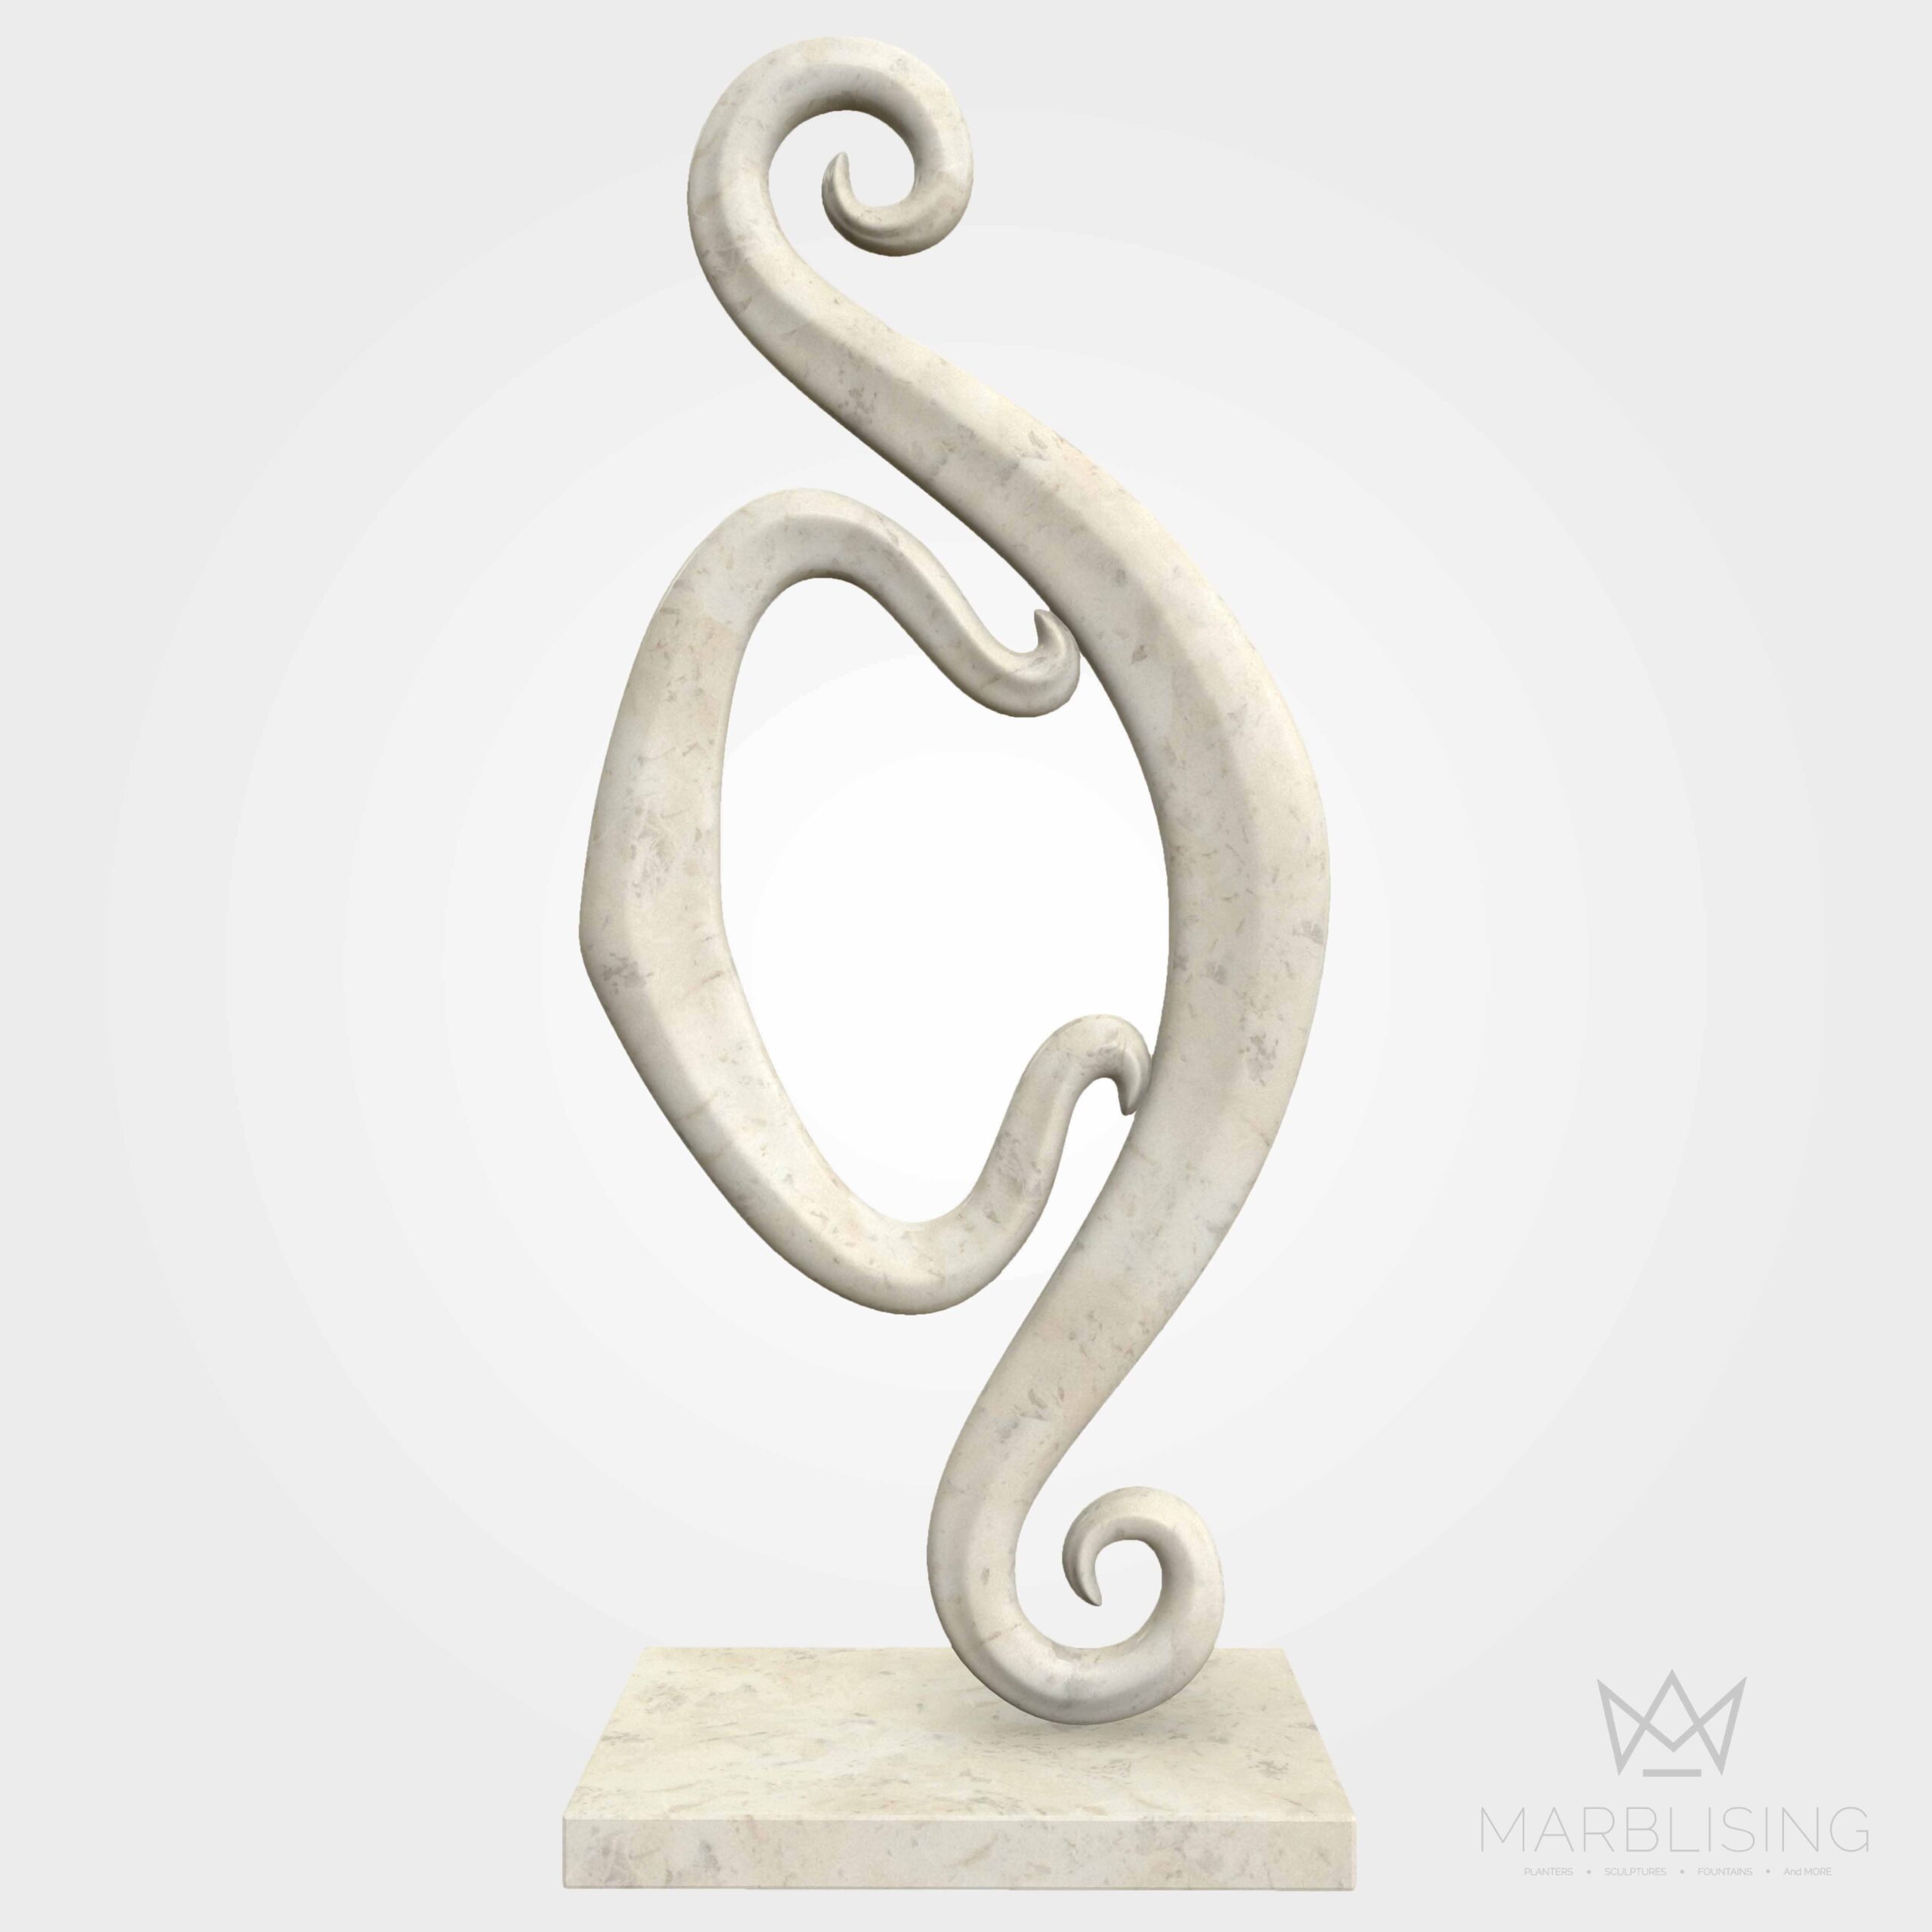 Marble sculptural art Standing Scrolls